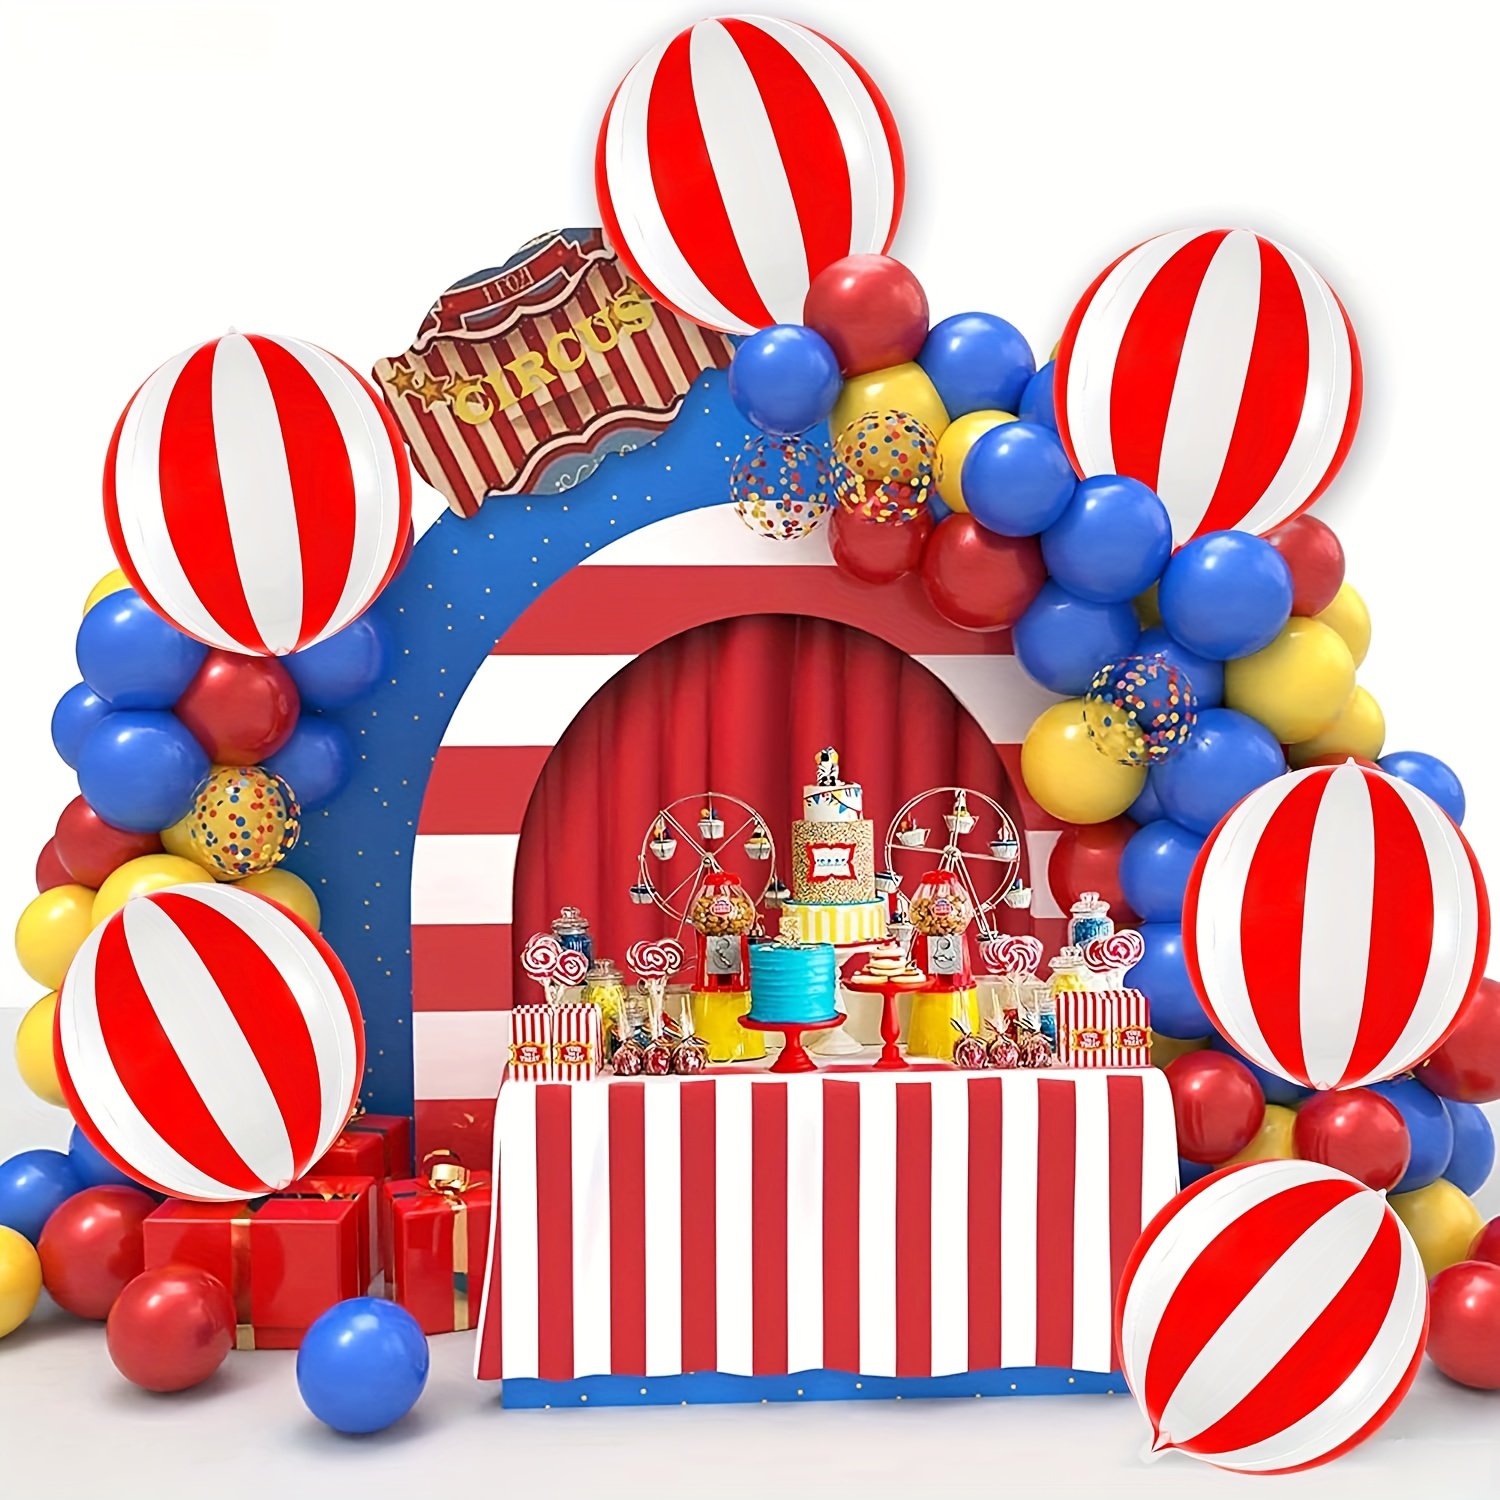 Decoraciones de fiesta temática de circo de carnaval, pancarta de  bienvenida al carnaval y falda de mesa a rayas rojas y blancas para fiesta  temática